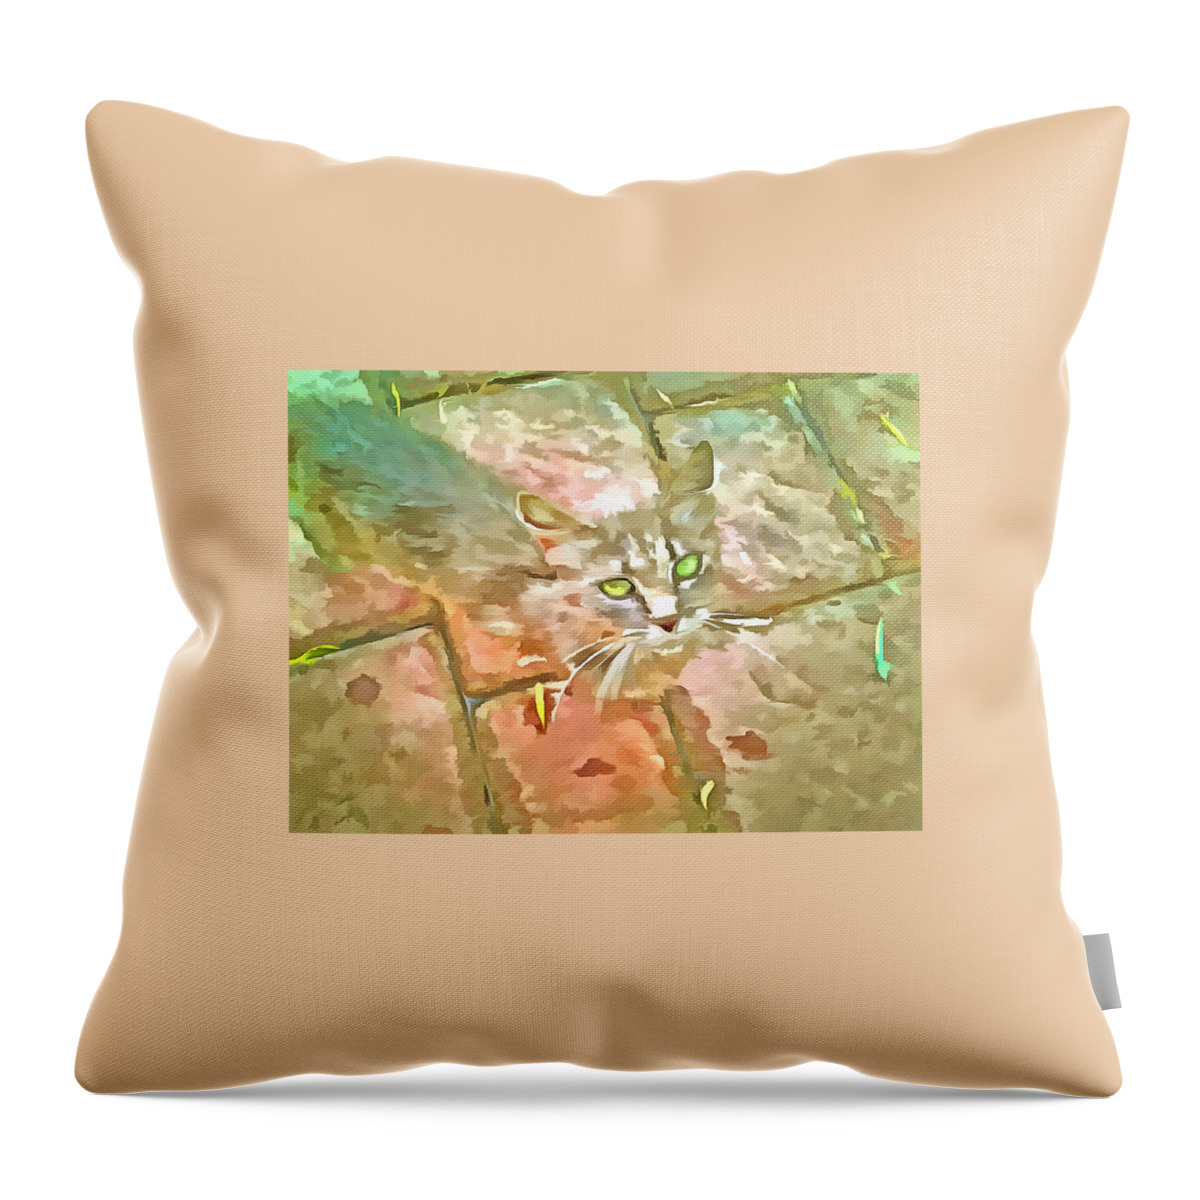 Cat Throw Pillow featuring the digital art Little Cat by Bernie Sirelson